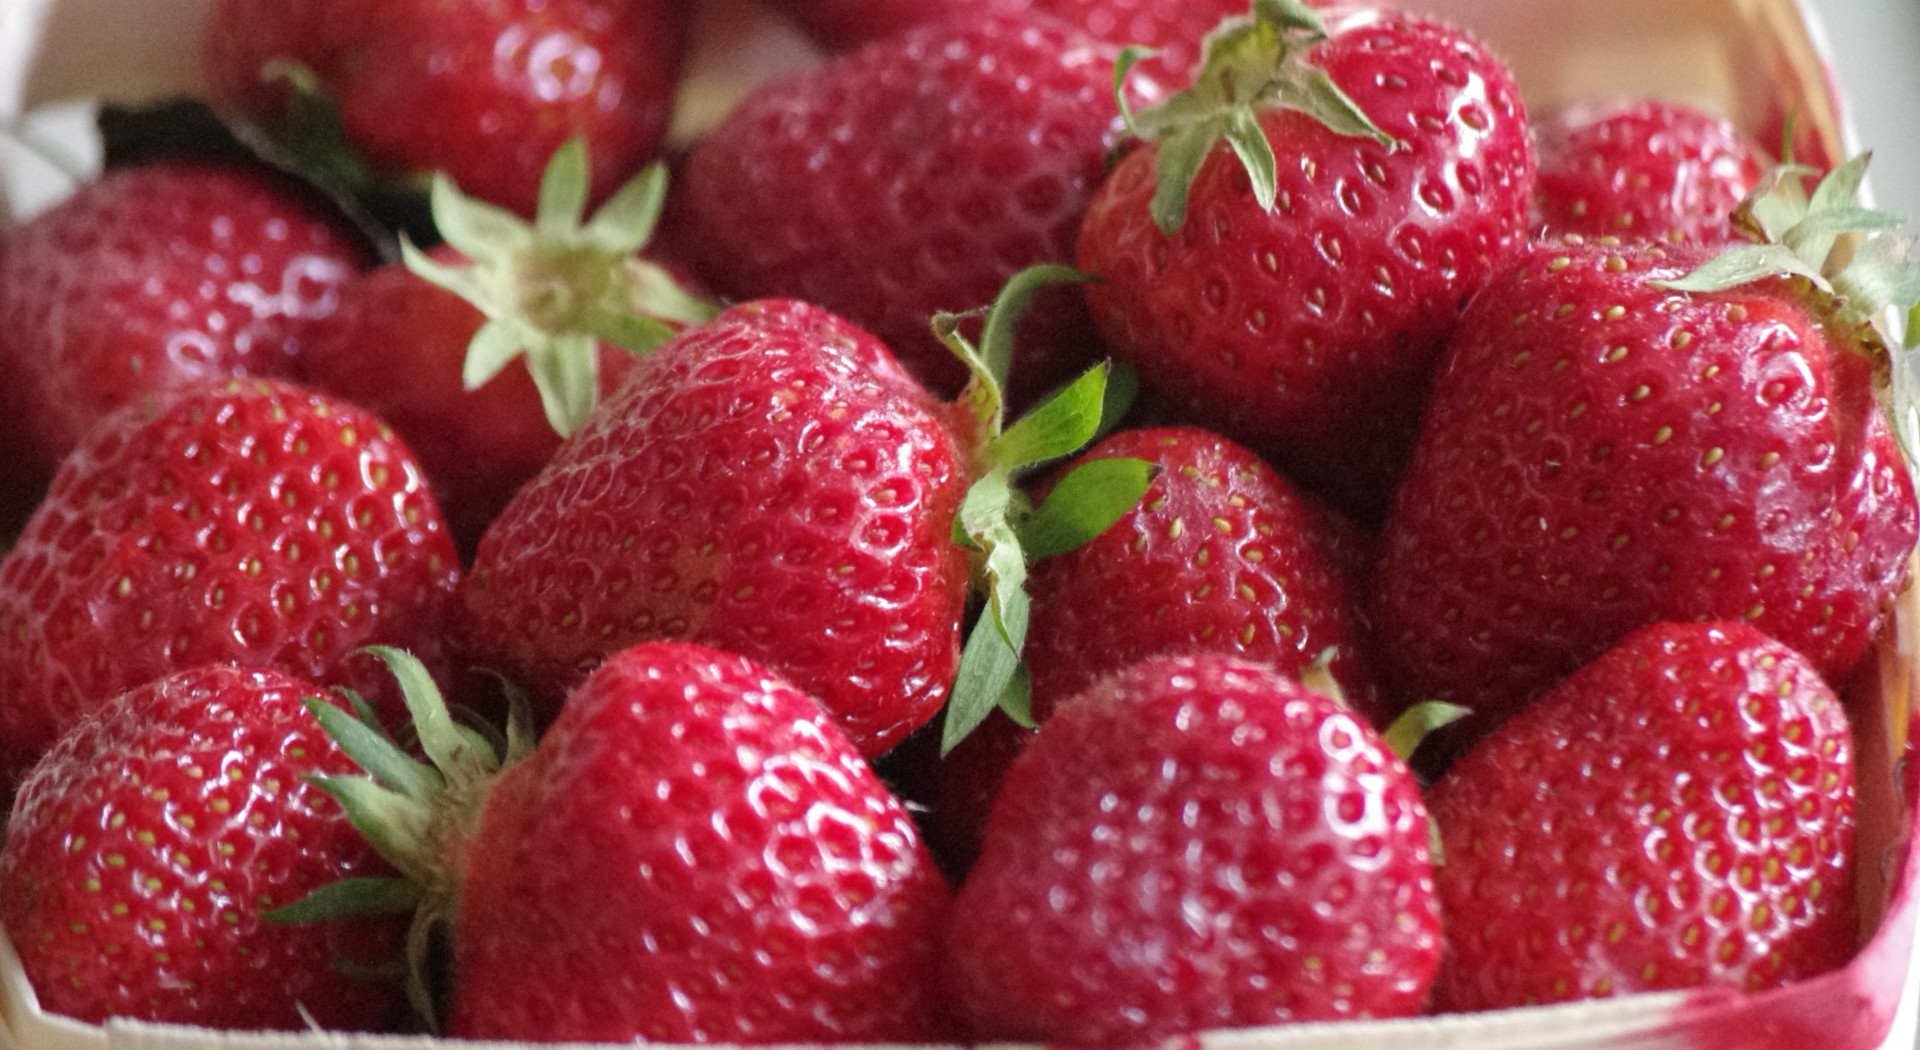 strawberries fruit strawberries free photo